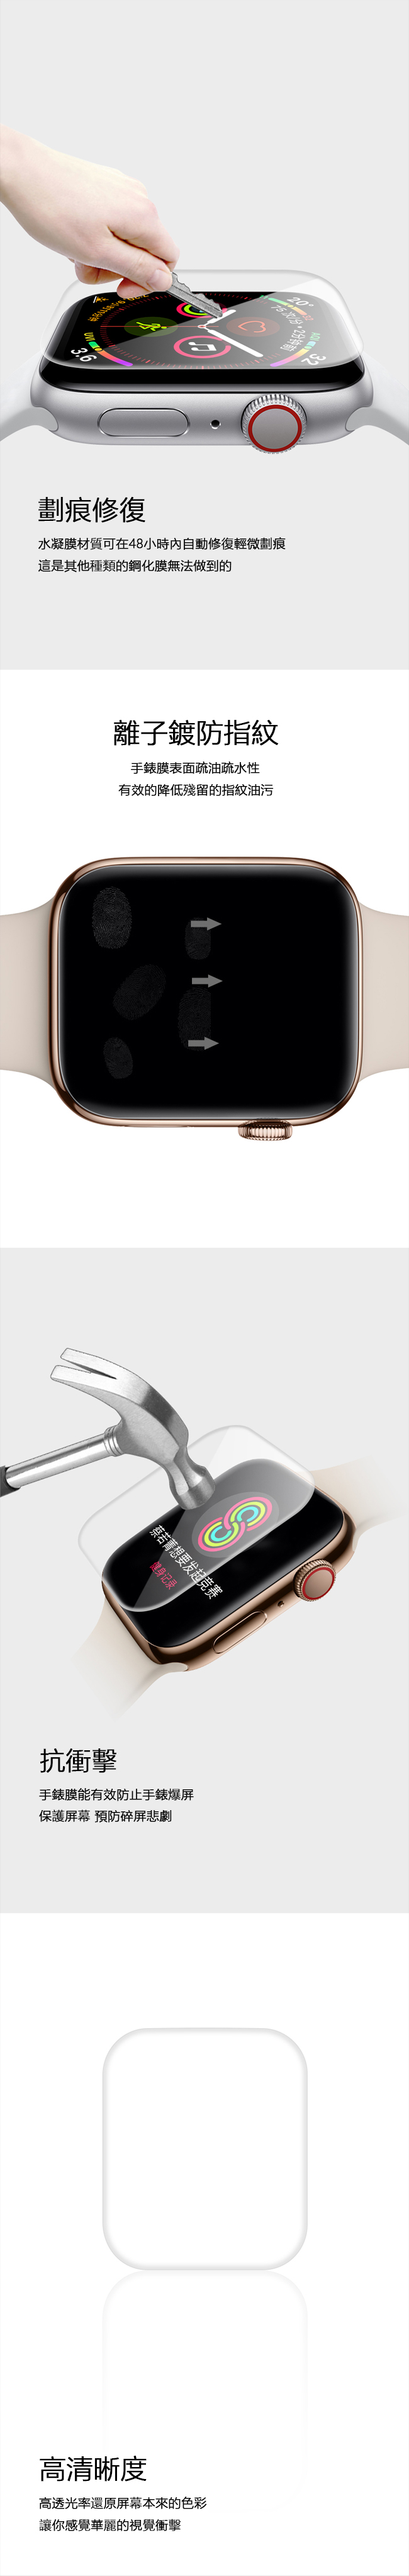 2張裝 Apple Watch 1/2/3代 水凝膜 高清滿版 防爆 手錶保護貼